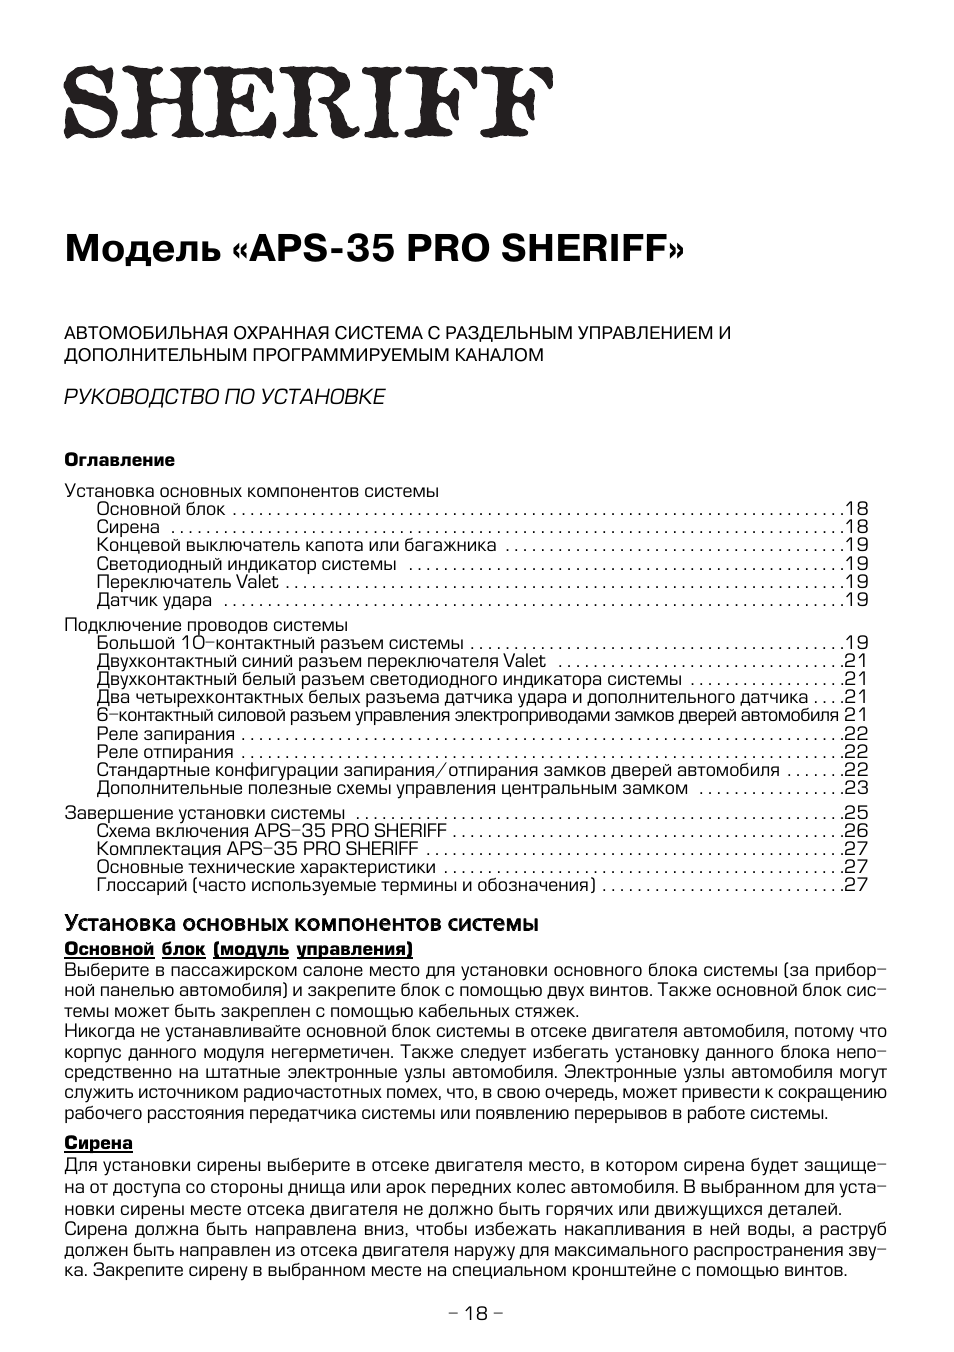 Sheriff aps 35 pro инструкция